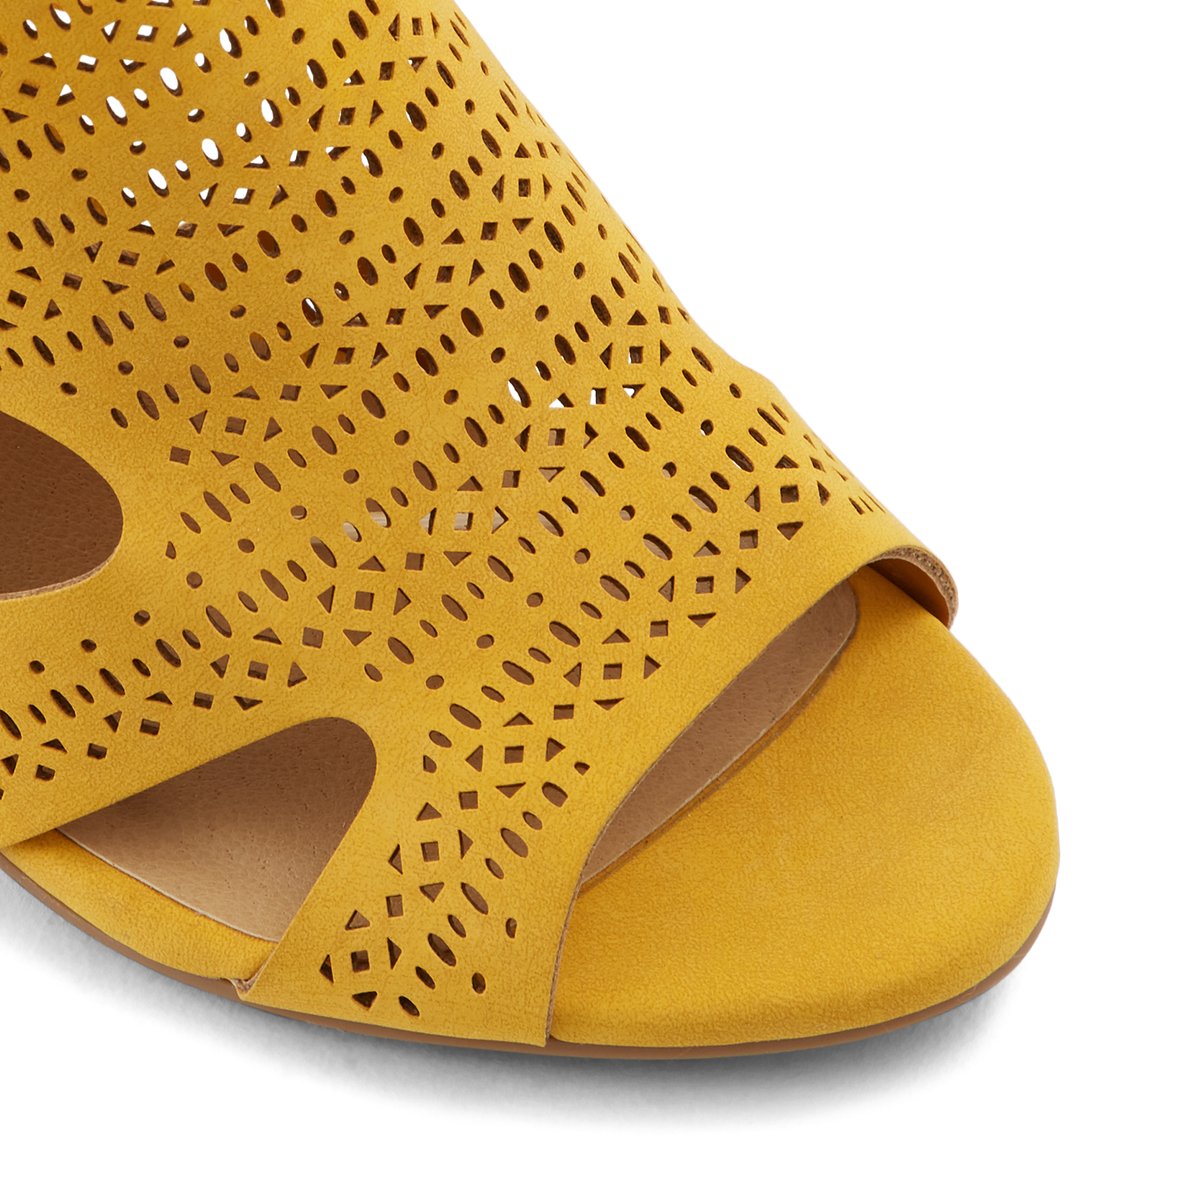 yellow heels canada